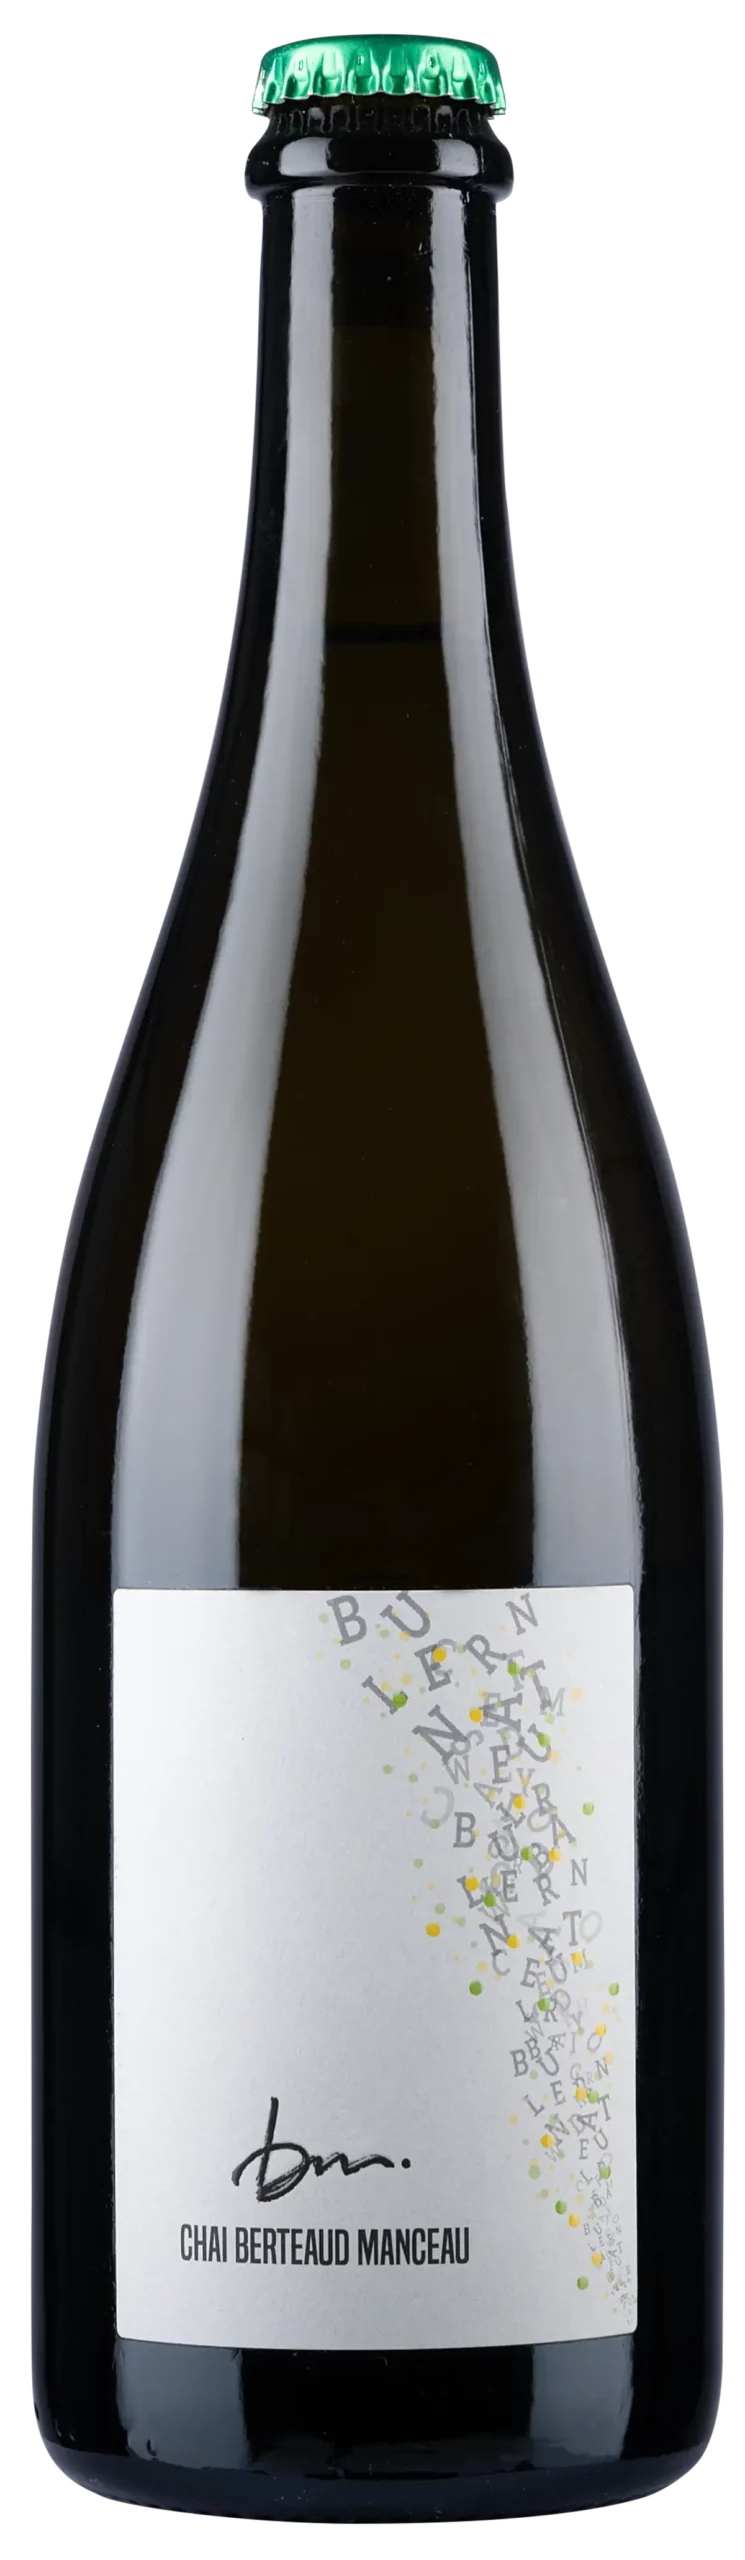 Premier vin entièrement produit dans notre cave de la Roche-sur-Yon. Le pétillant naturel du Chai Berteaud Manceau saura ravir vos papilles !